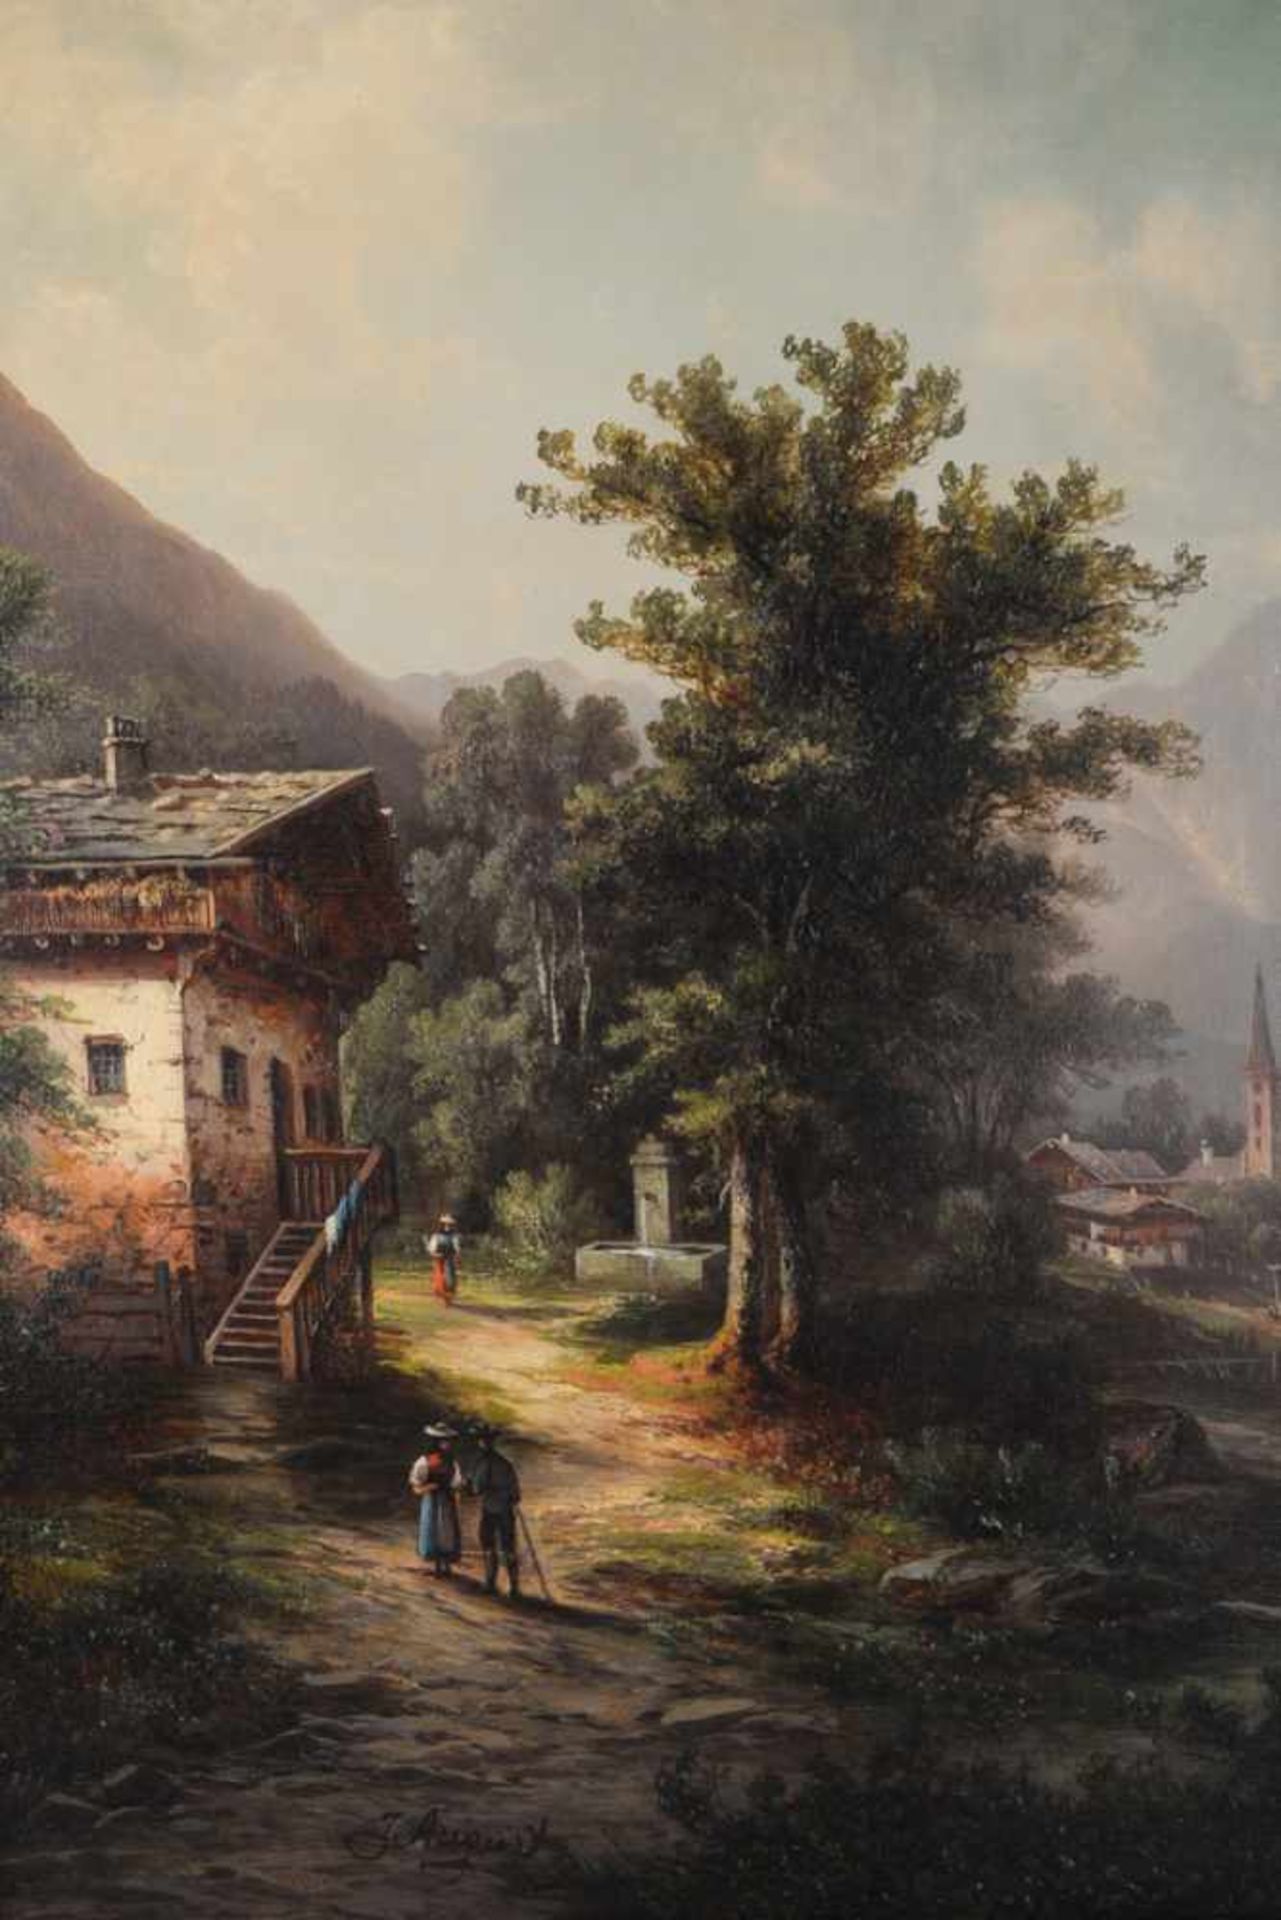 Romantische Landschaft, signiert J. August.Öl auf Leinwand, Datierung um 1870, unten links signiert, - Bild 5 aus 7